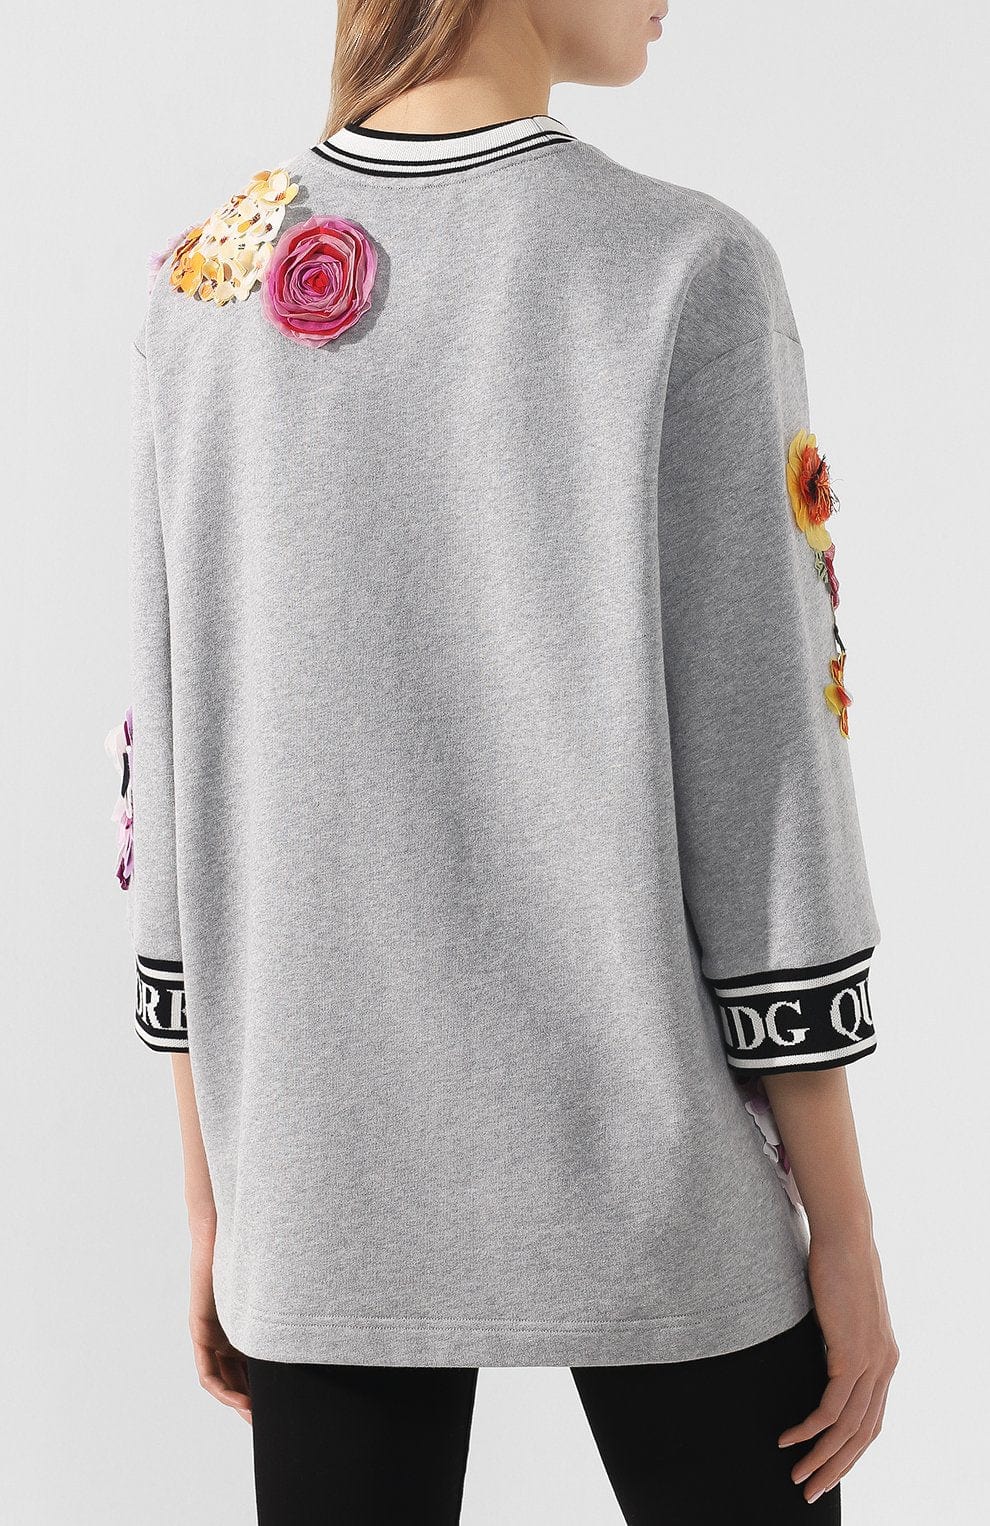 Dolce & Gabbana Embellished Floral Appliqued Sweatshirt